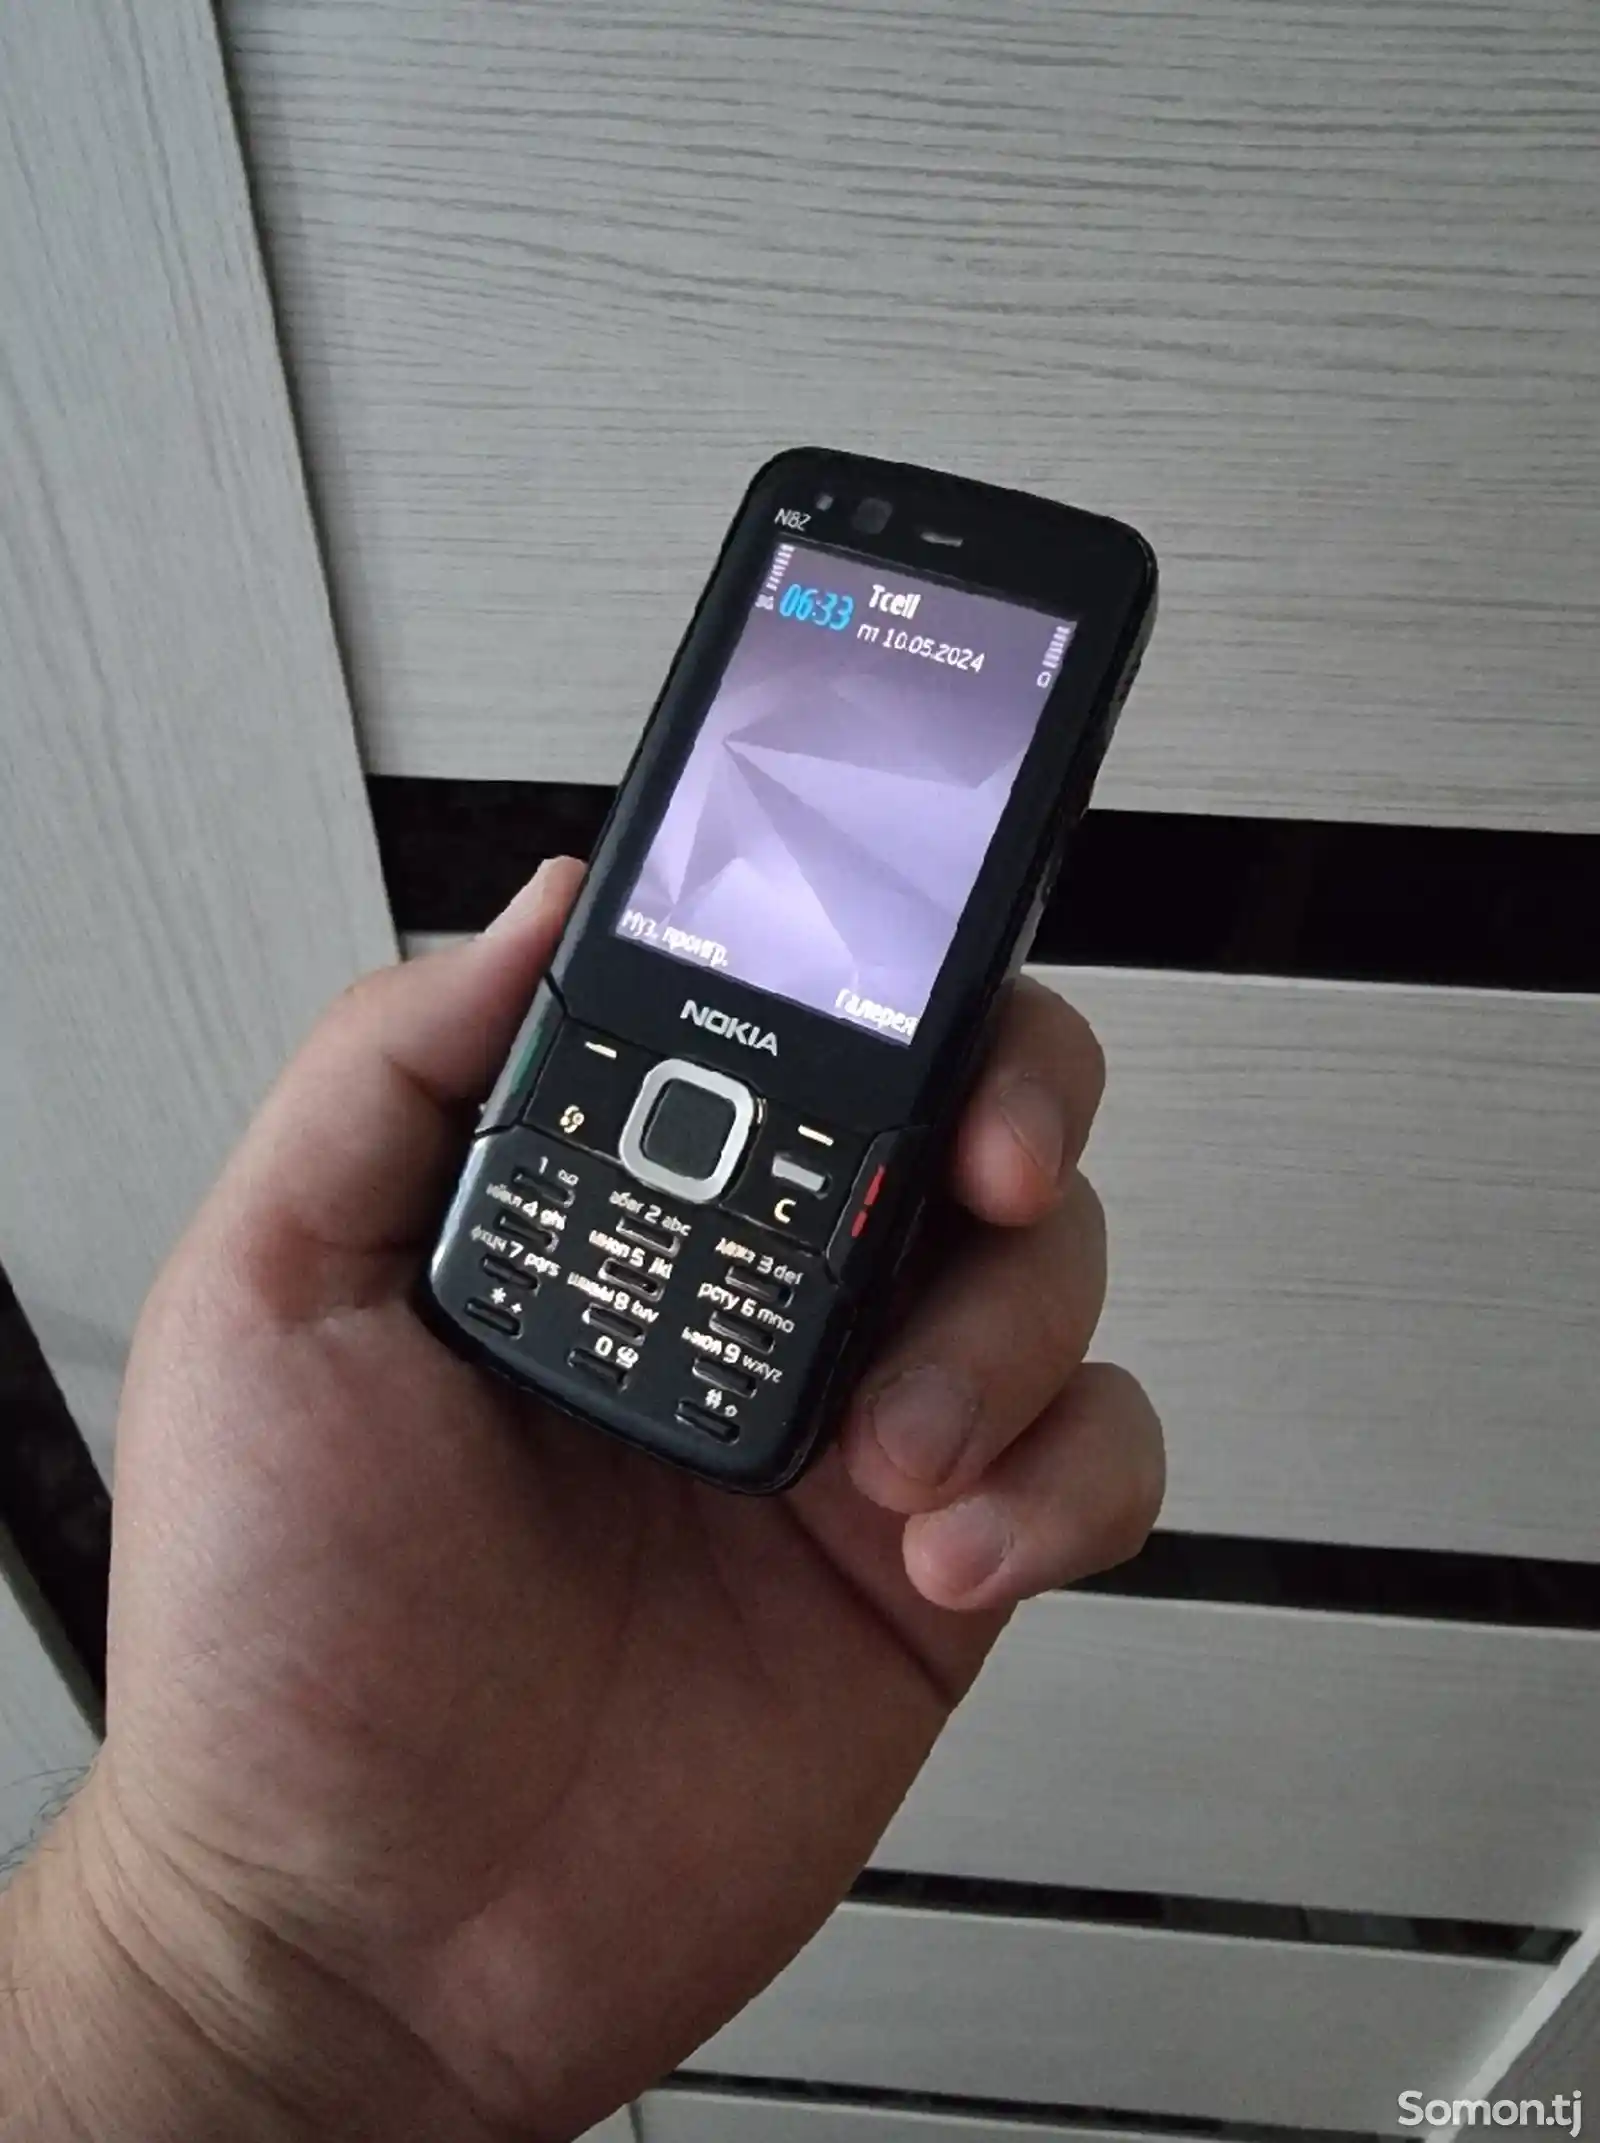 Nokia N82-4